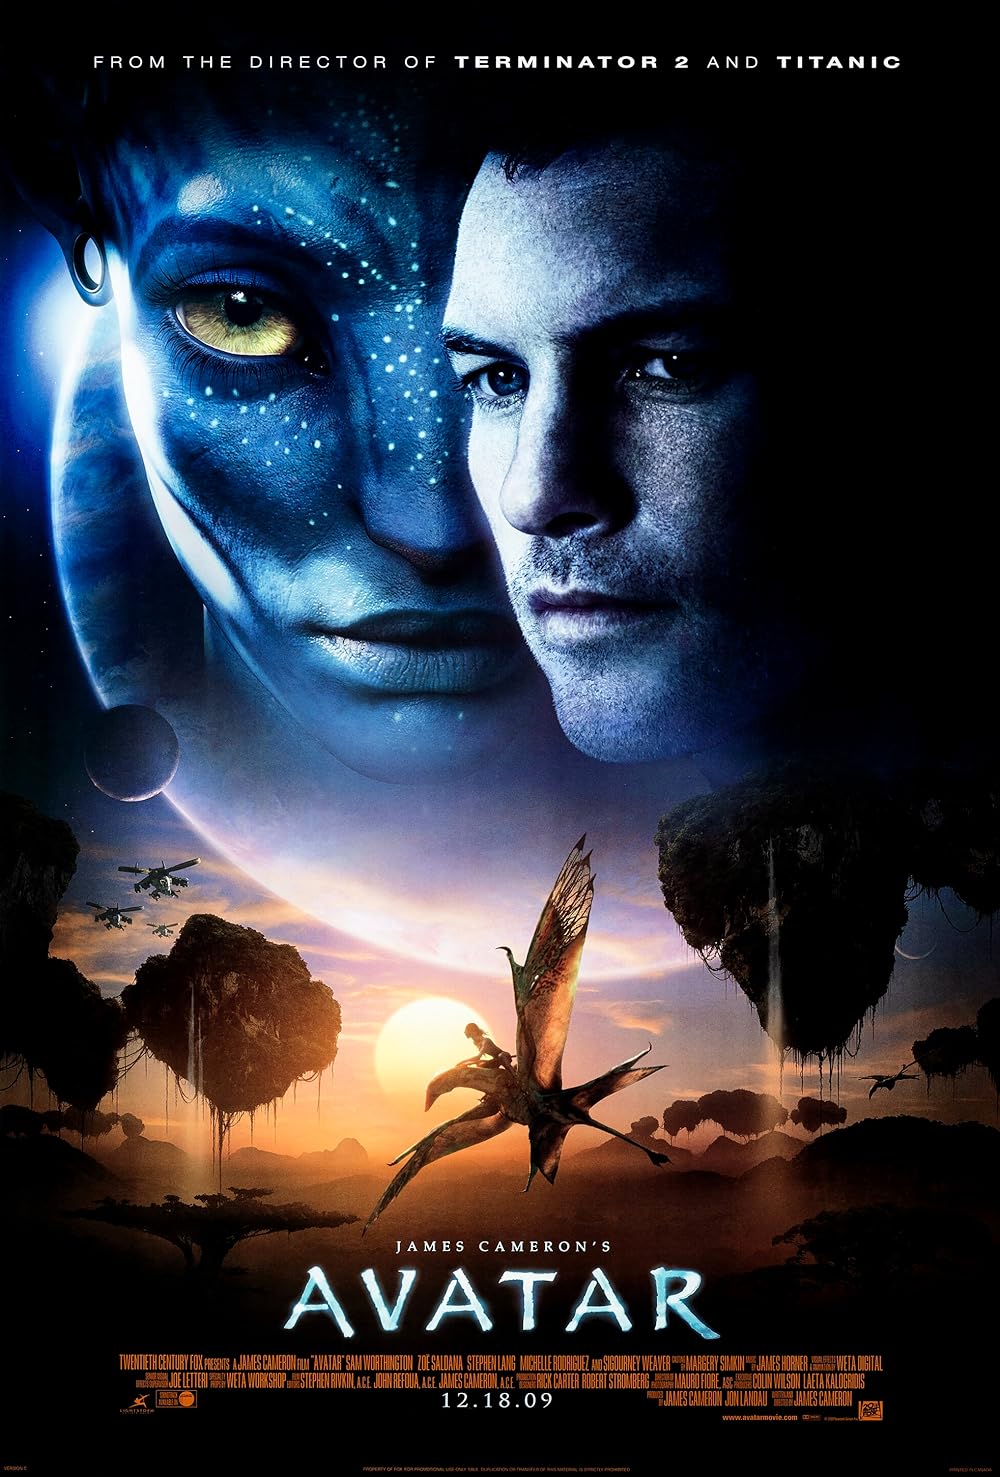 Avatar (2009):